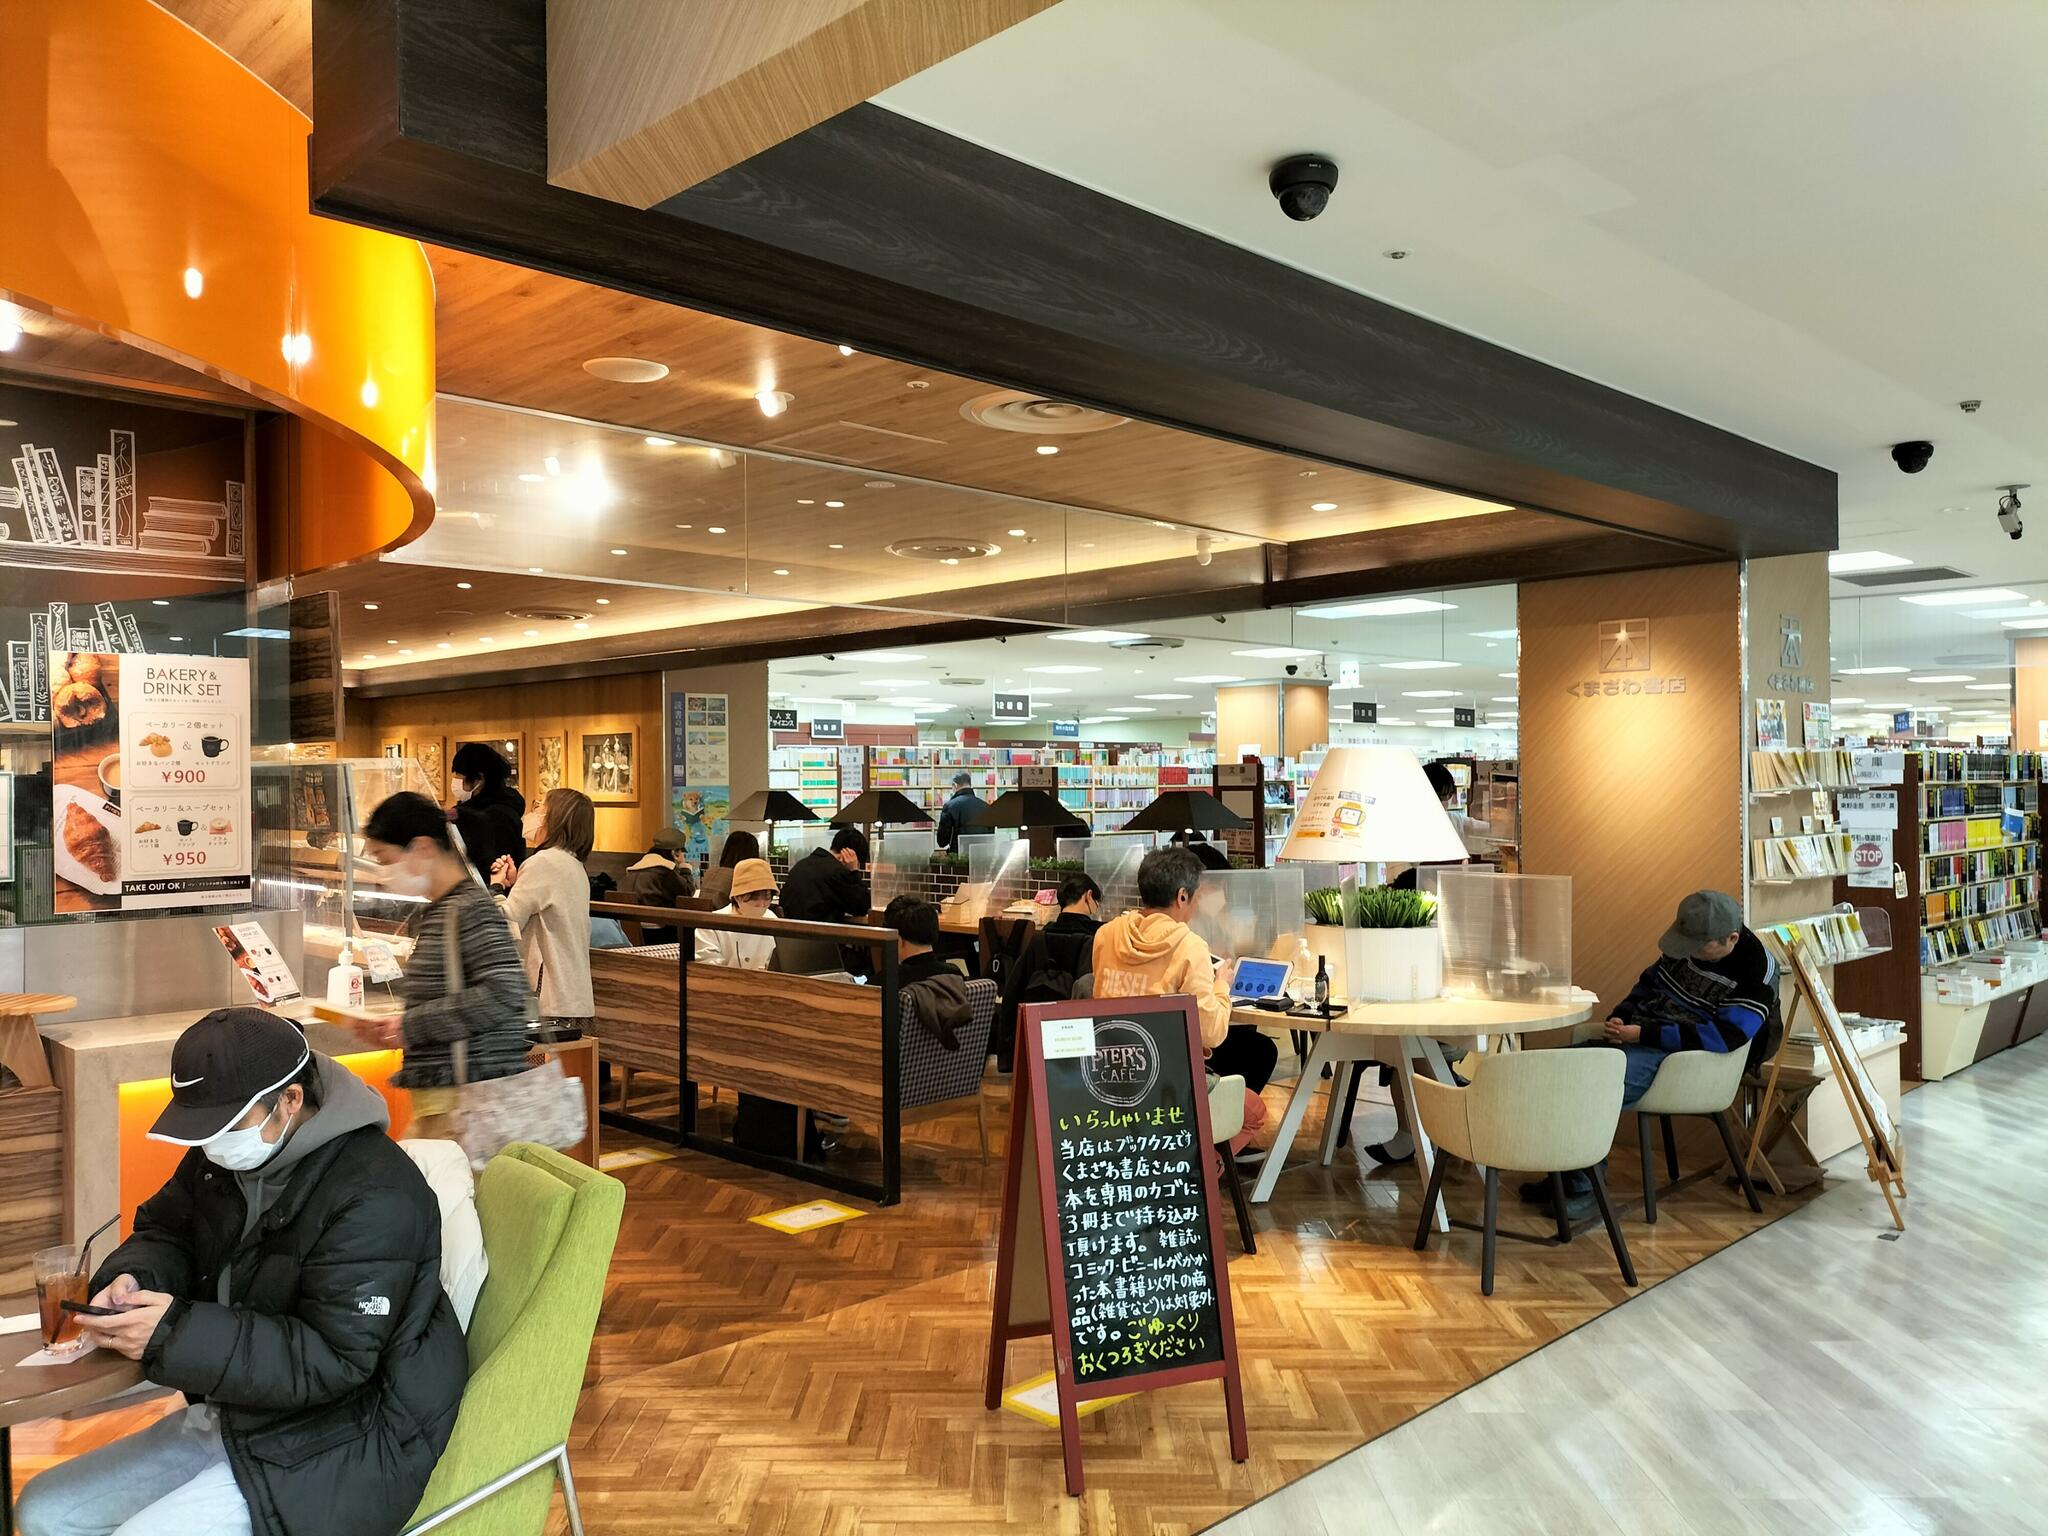 ピアーズカフェ 聖蹟桜ヶ丘店 - 多摩市関戸/カフェ・喫茶 | Yahoo!マップ